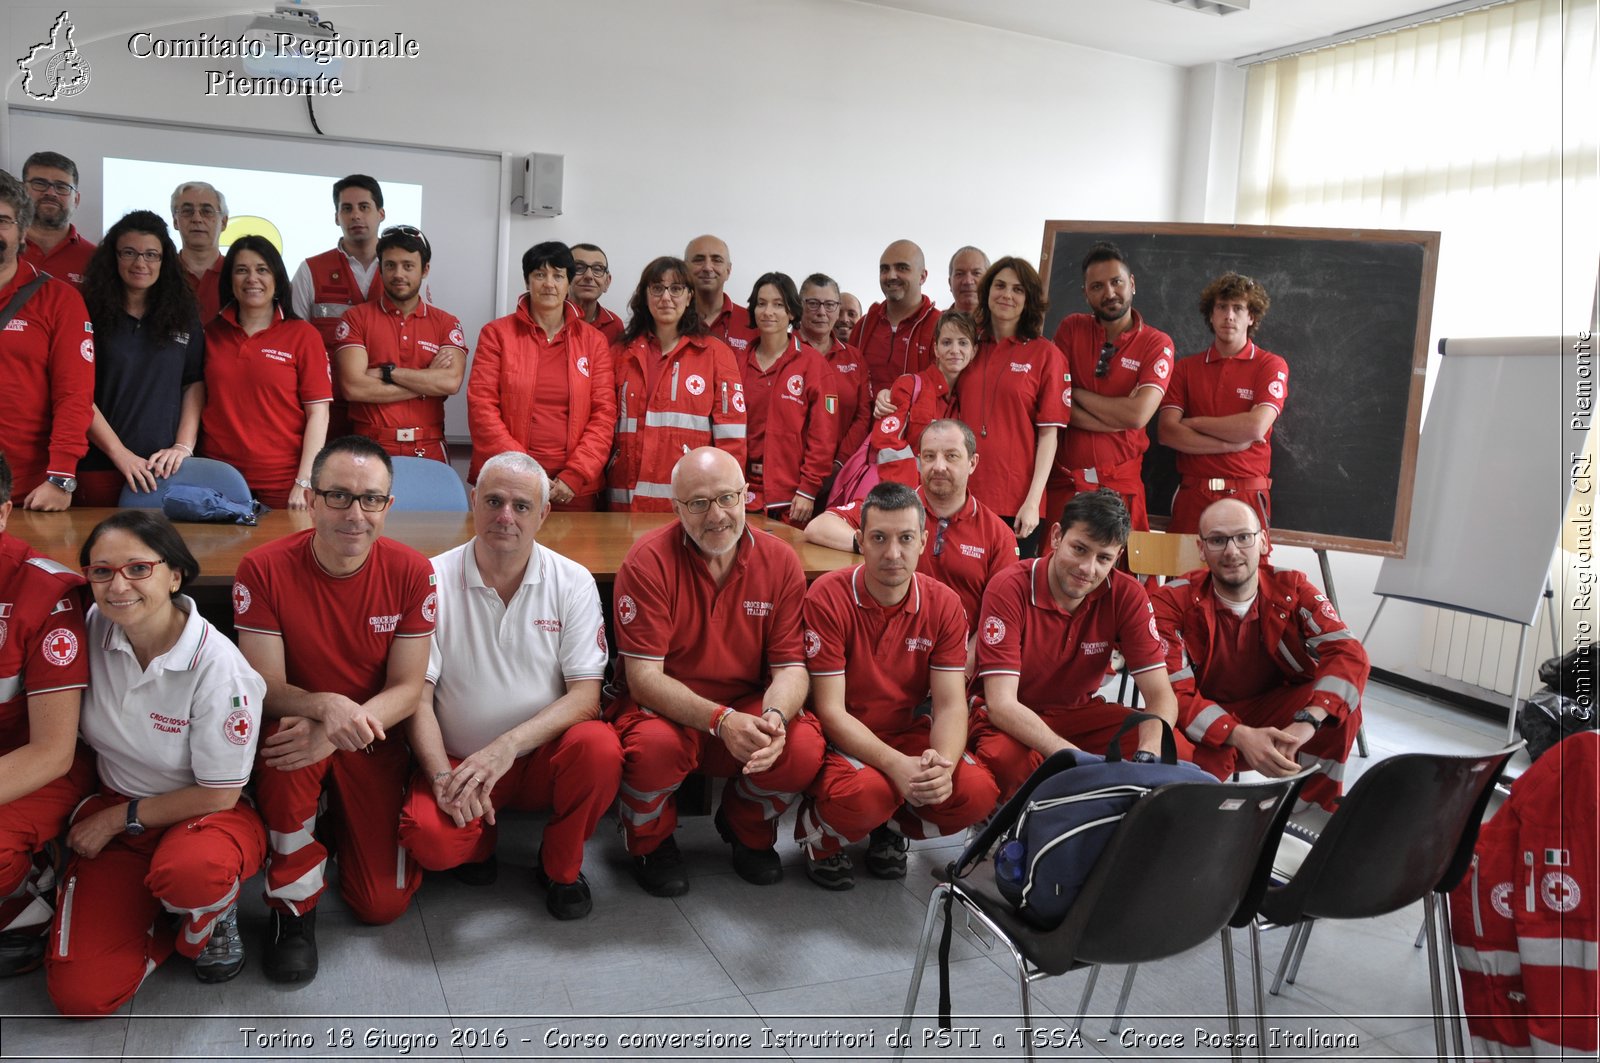 Torino 18 Giugno 2016 - Corso conversione Istruttori da PSTI a TSSA - Croce Rossa Italiana- Comitato Regionale del Piemonte